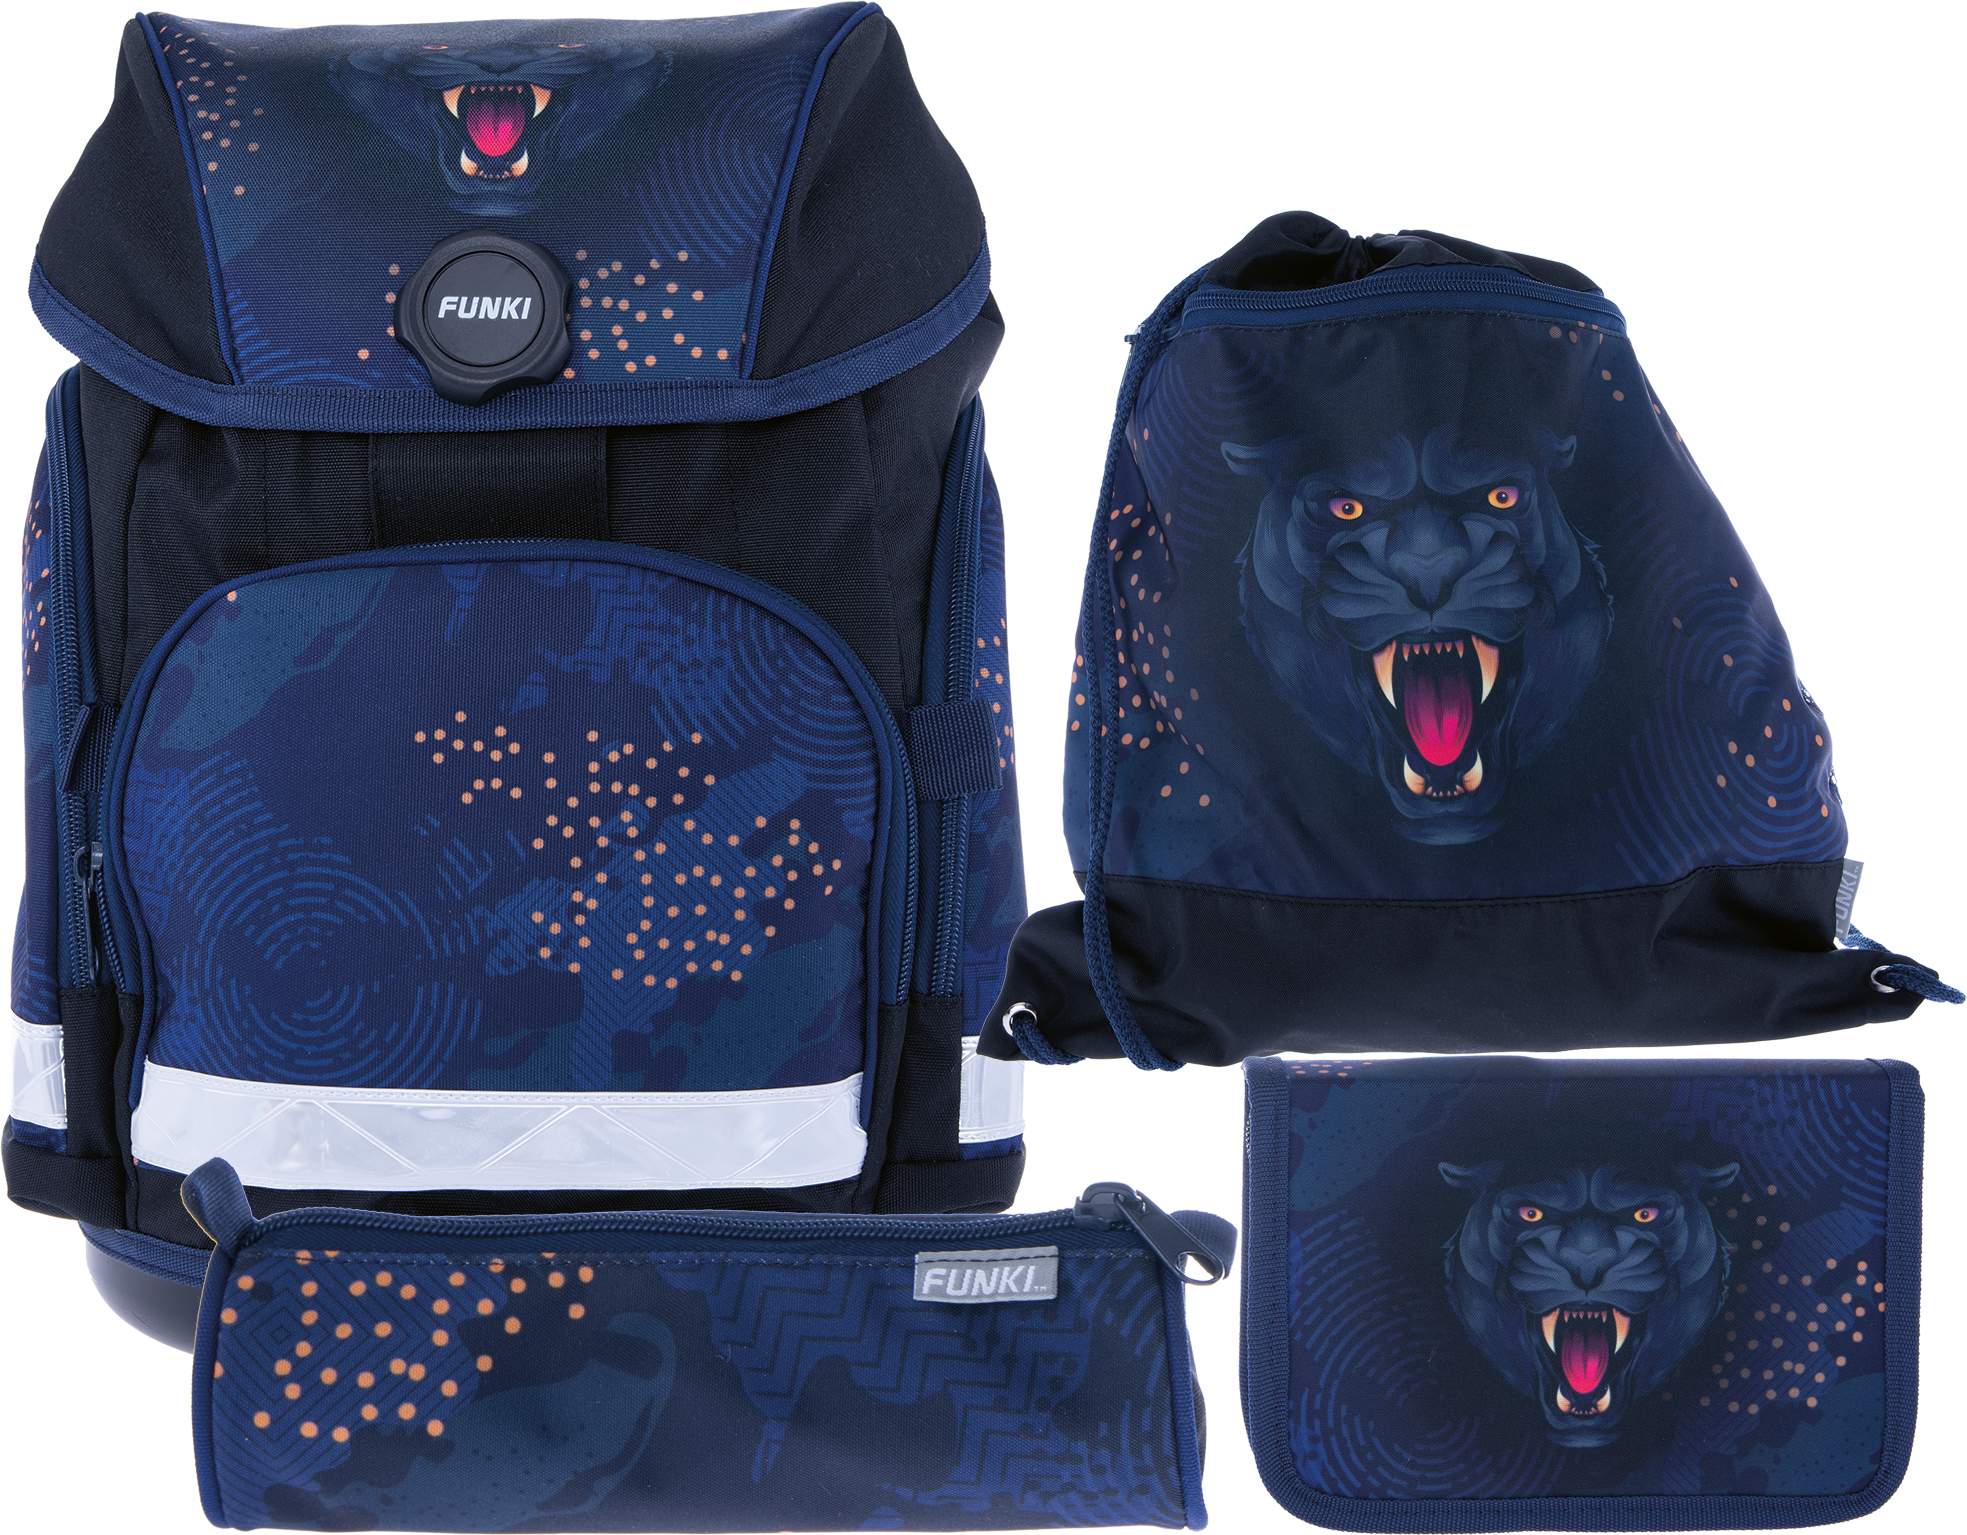 FUNKI Joy-Bag Set Panther 6011.520 multicolor 4 pcs. multicolor 4 pcs.